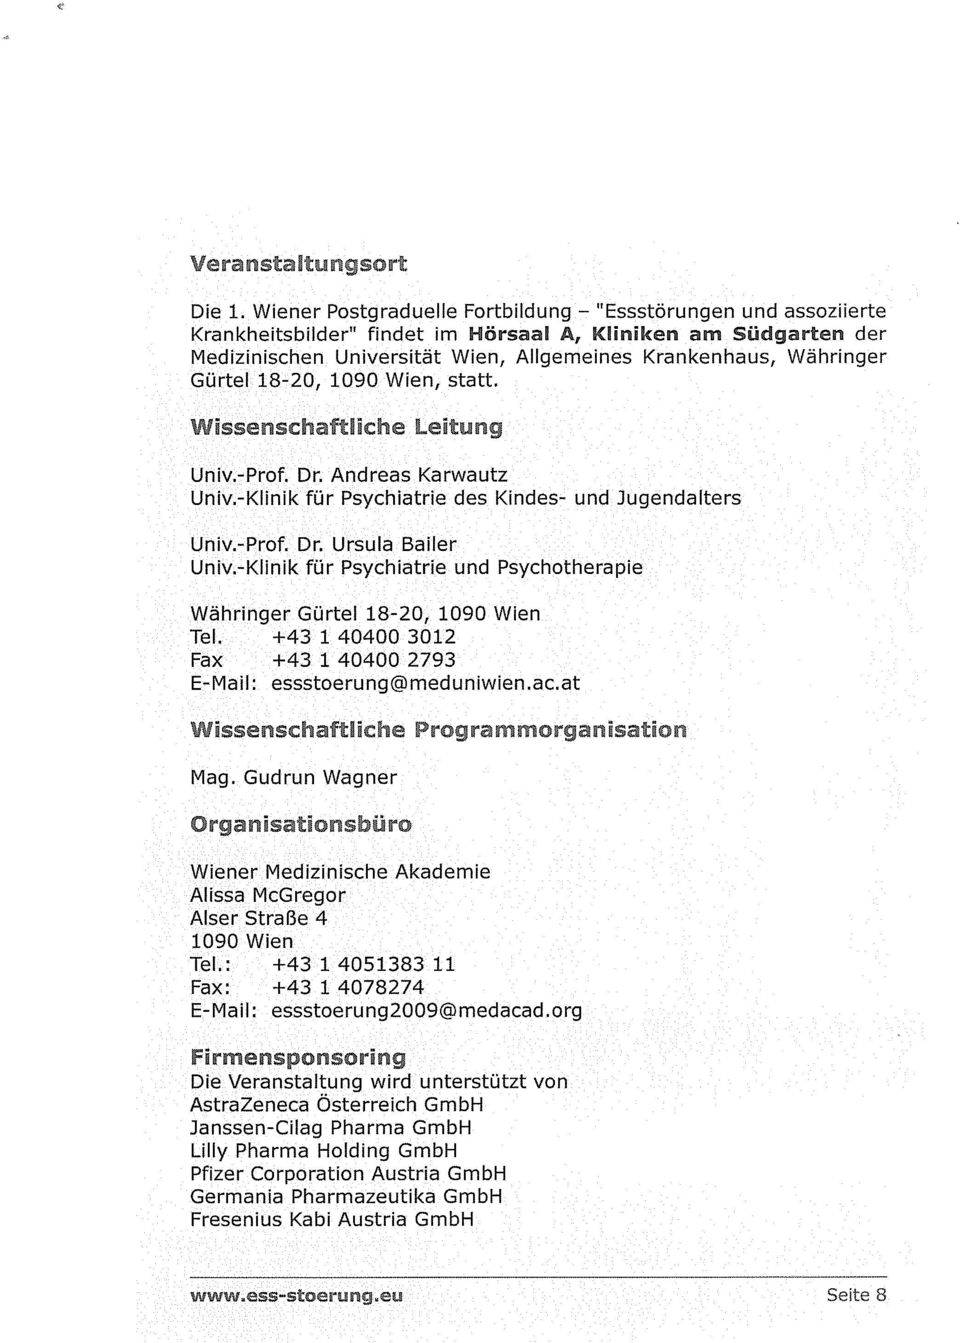 Gürtel 18-20, 1090 Wien, statt. Unv.-Prof. Dr. Andreas Karwautz Univ.-KHnik für Psychiatrie des Kindes- und Jugendalters UrTiv. Prof. Dr. Ursula Bailer Univ.